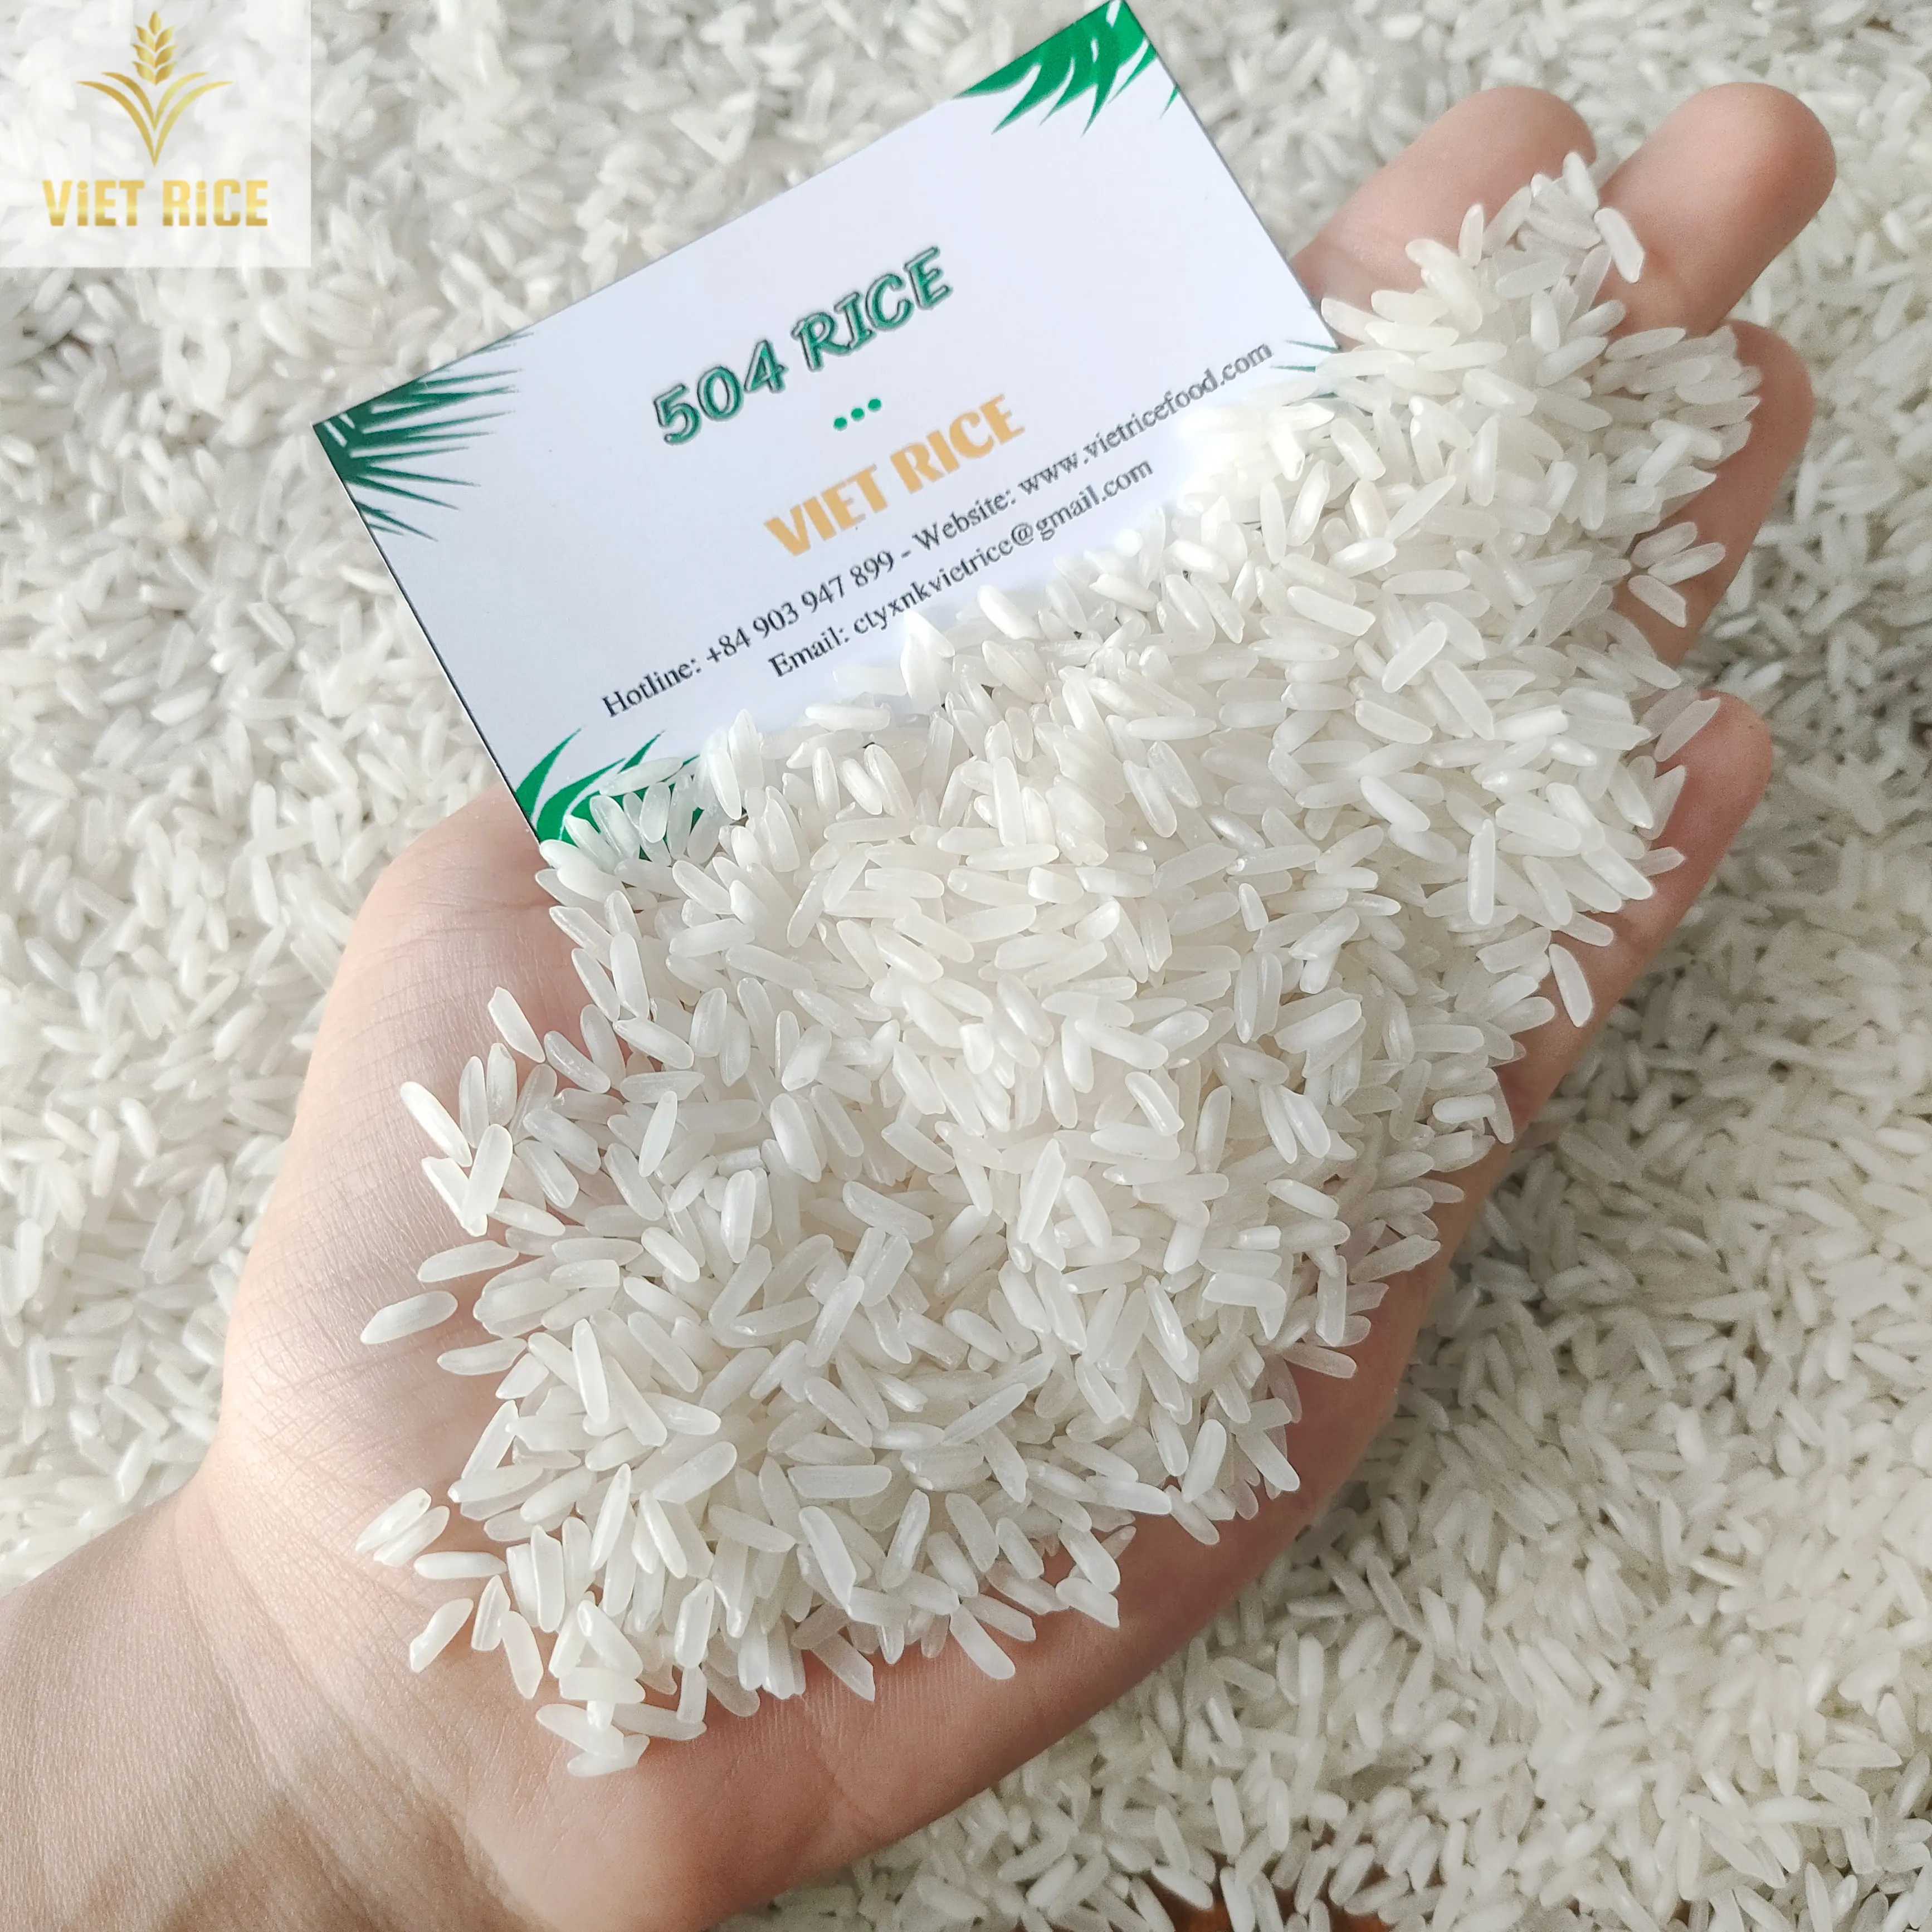 الأرز الفيتنامي (أفضل مورِّد، 504 أرز) أرز أبيض للبيع على المستويين المحلي والدولي بجودة وفائقة وكميات